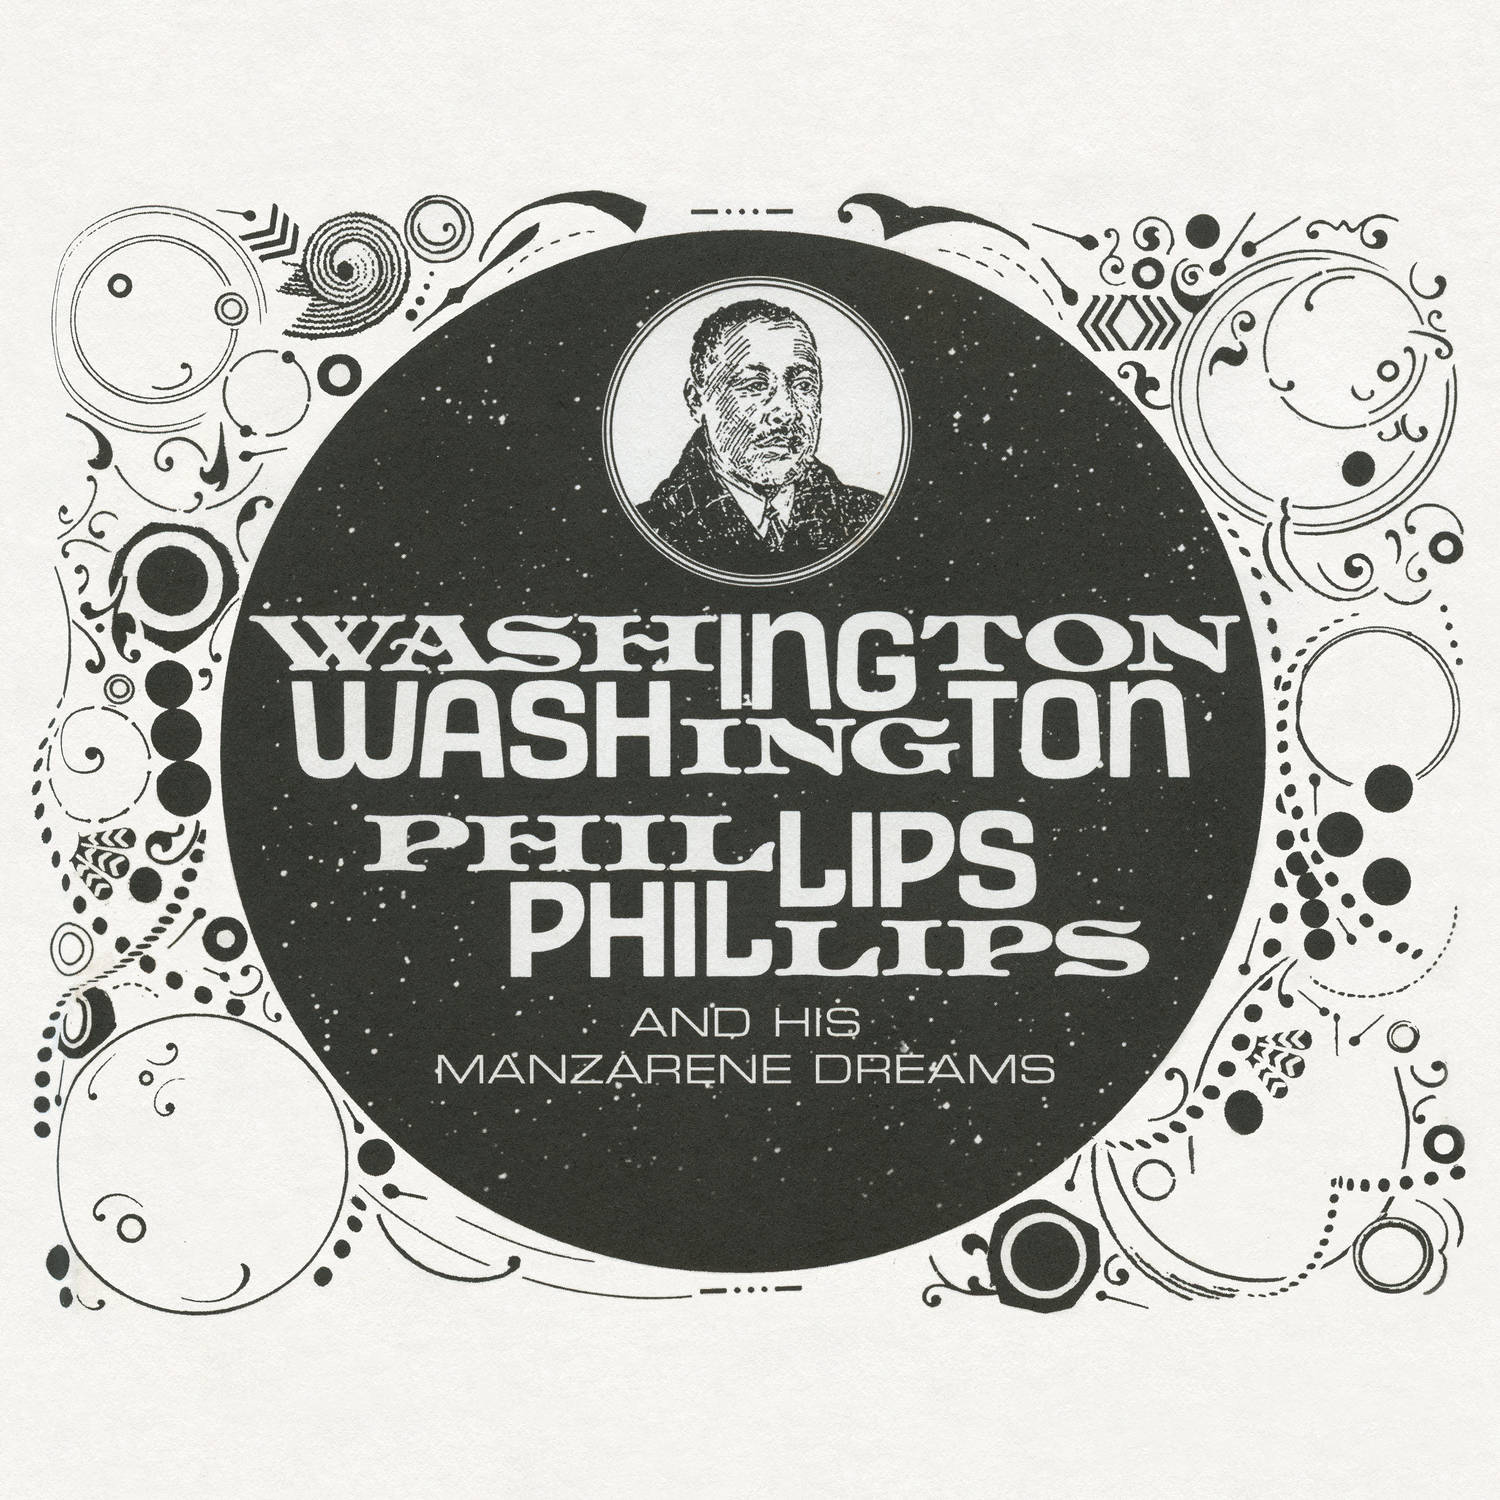 Washington Phillips - Washington Phillips and His Manzarene Dreams (2016/2017) [AcousticSounds FLAC 24bit/96kHz]